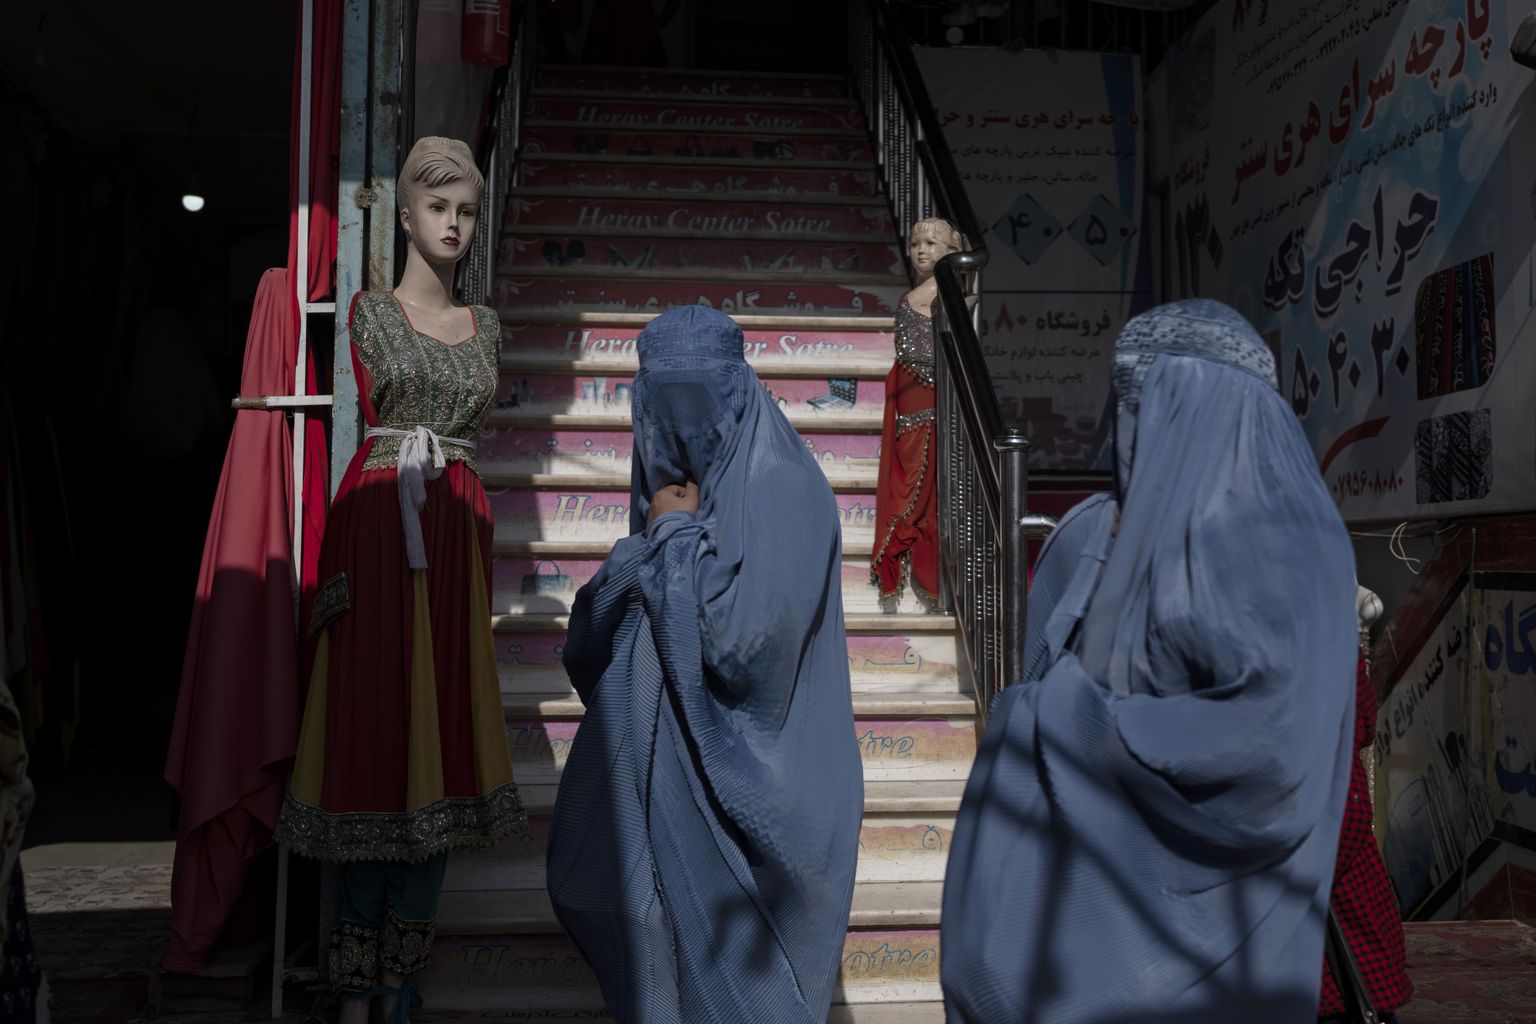 Burkasse riietatud afgaani naised rõivapoe juures Heratis tänavu novembris. Talibani uue korralduse kohaselt ei tohi poes rõivaid reklaamivatel mannekeenidel enam päid olla.